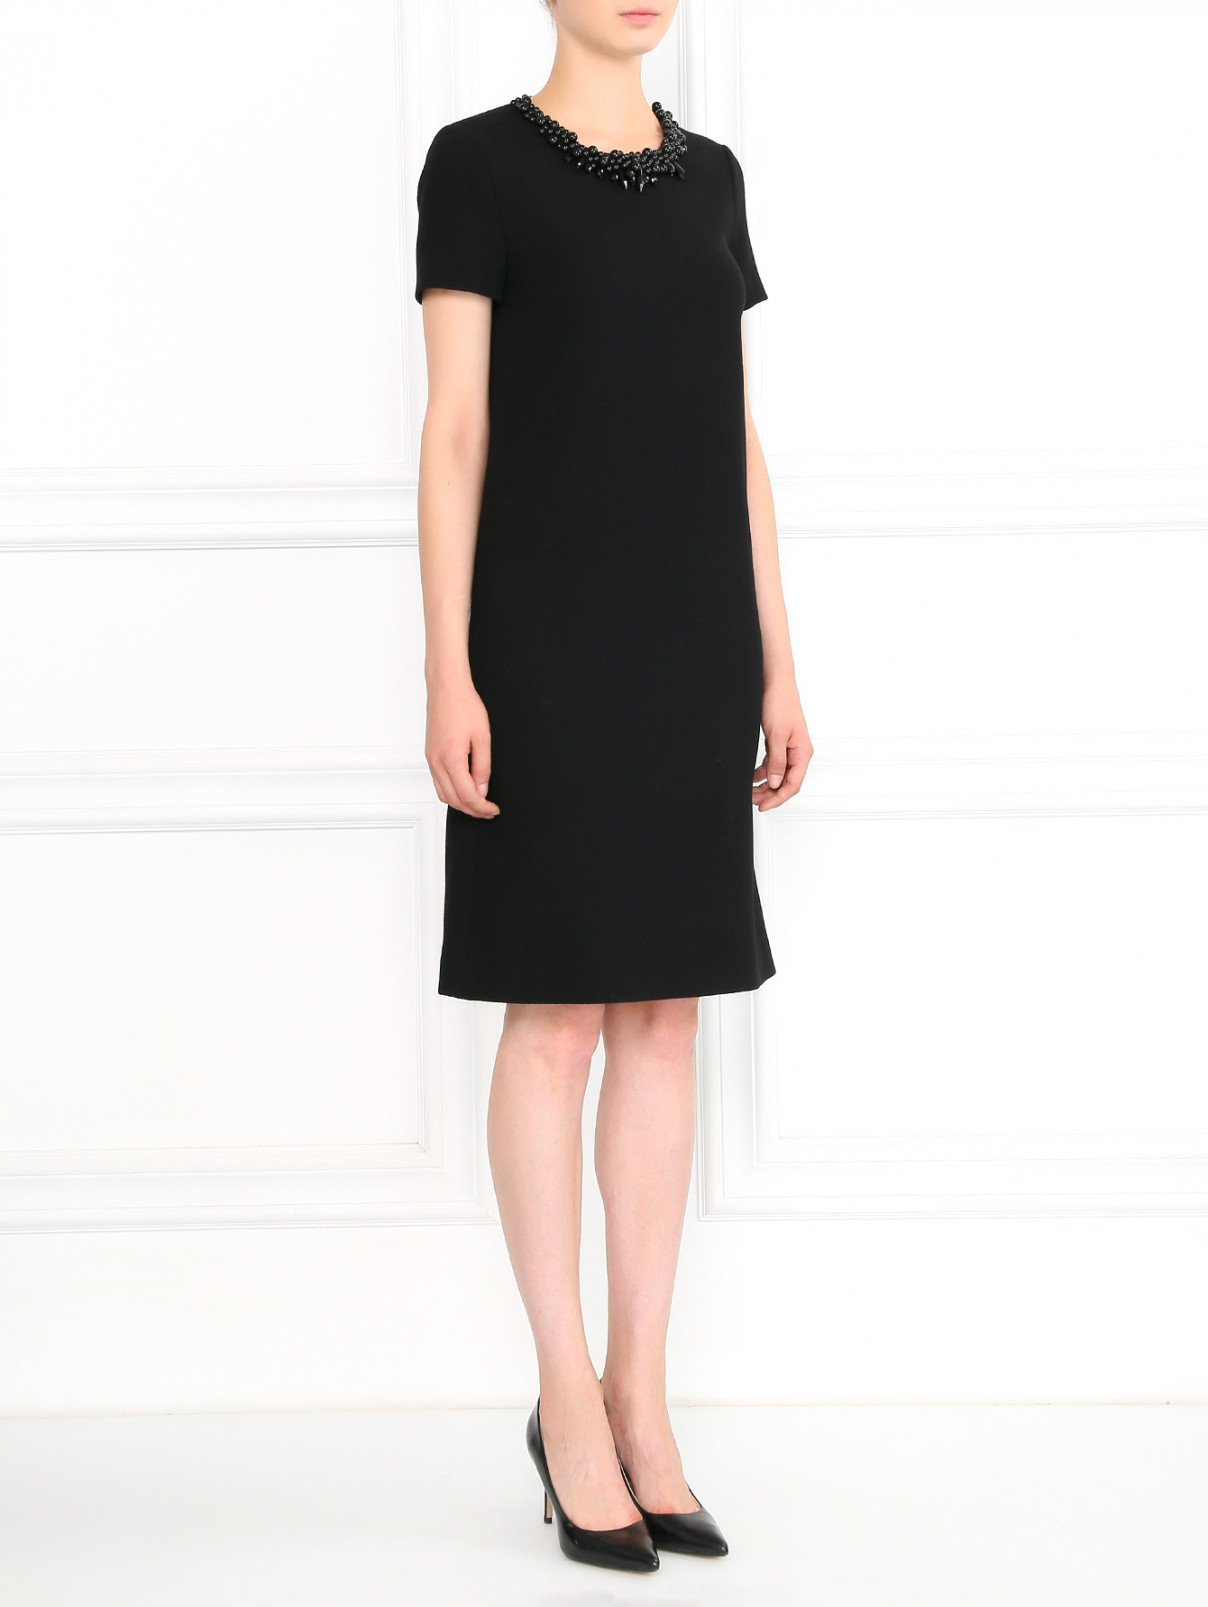 Платье прямого фасона из шерсти декорированное кристаллами Moschino Boutique  –  Модель Общий вид  – Цвет:  Черный